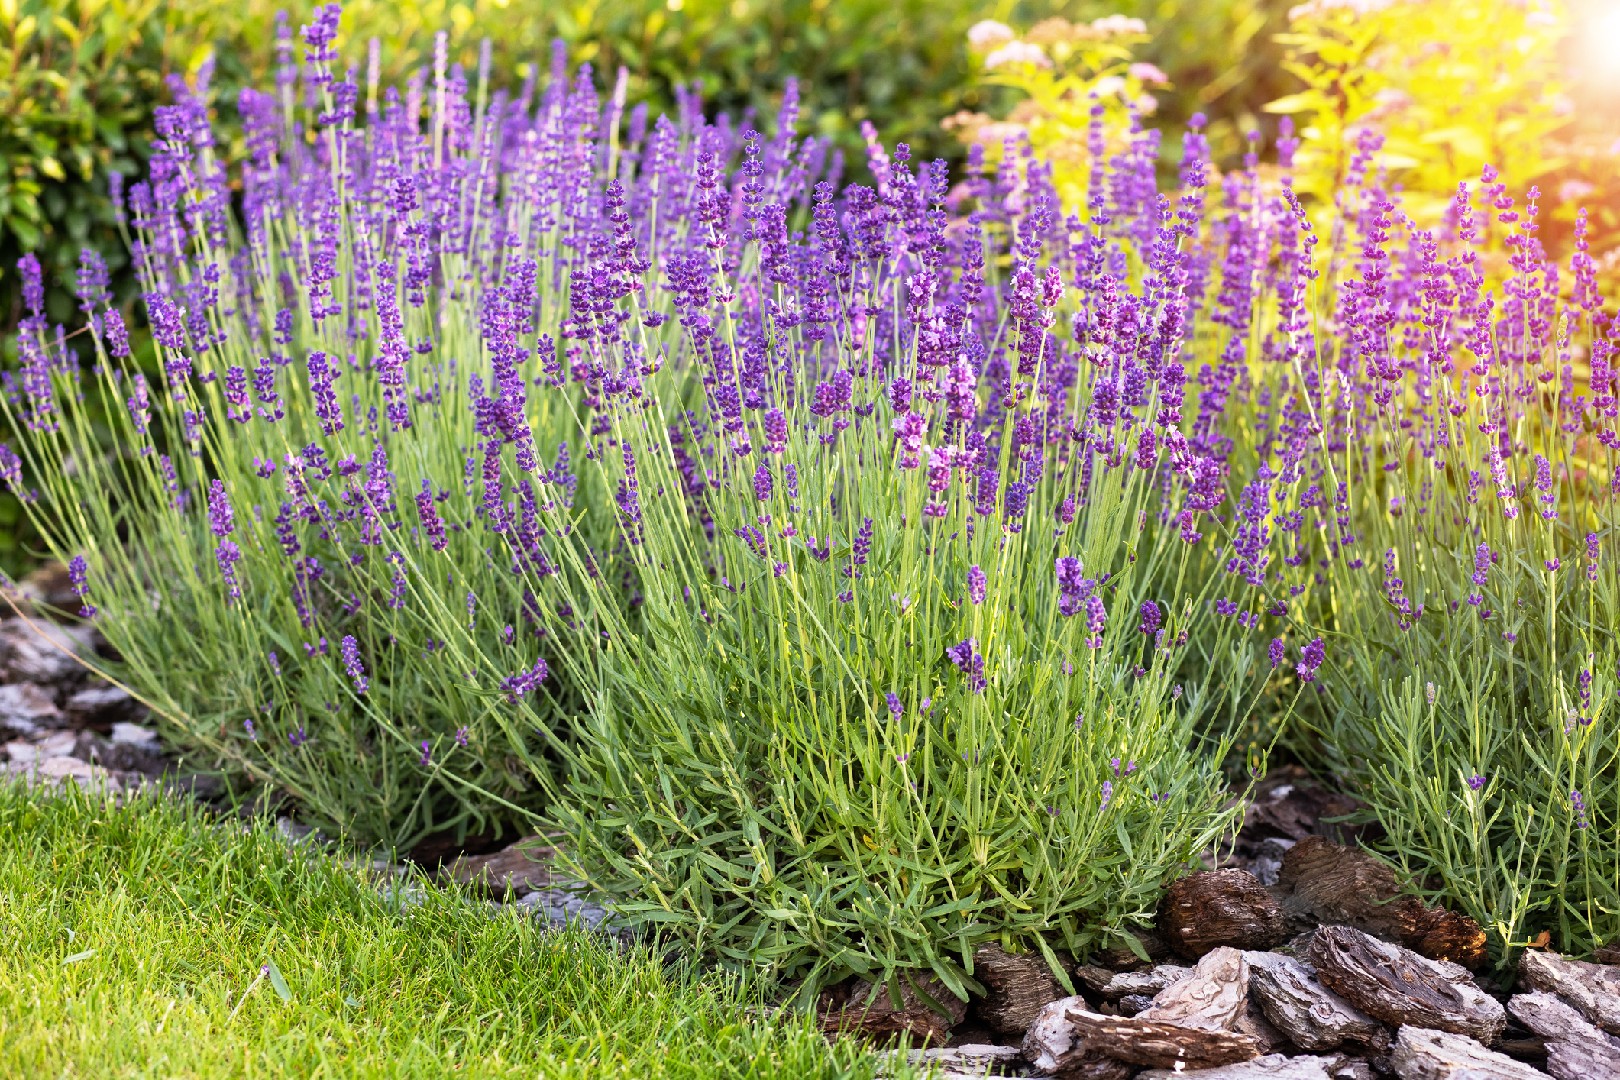 Munstead Lavender, Lavandula angustifolia 'Munstead', Monrovia Plant